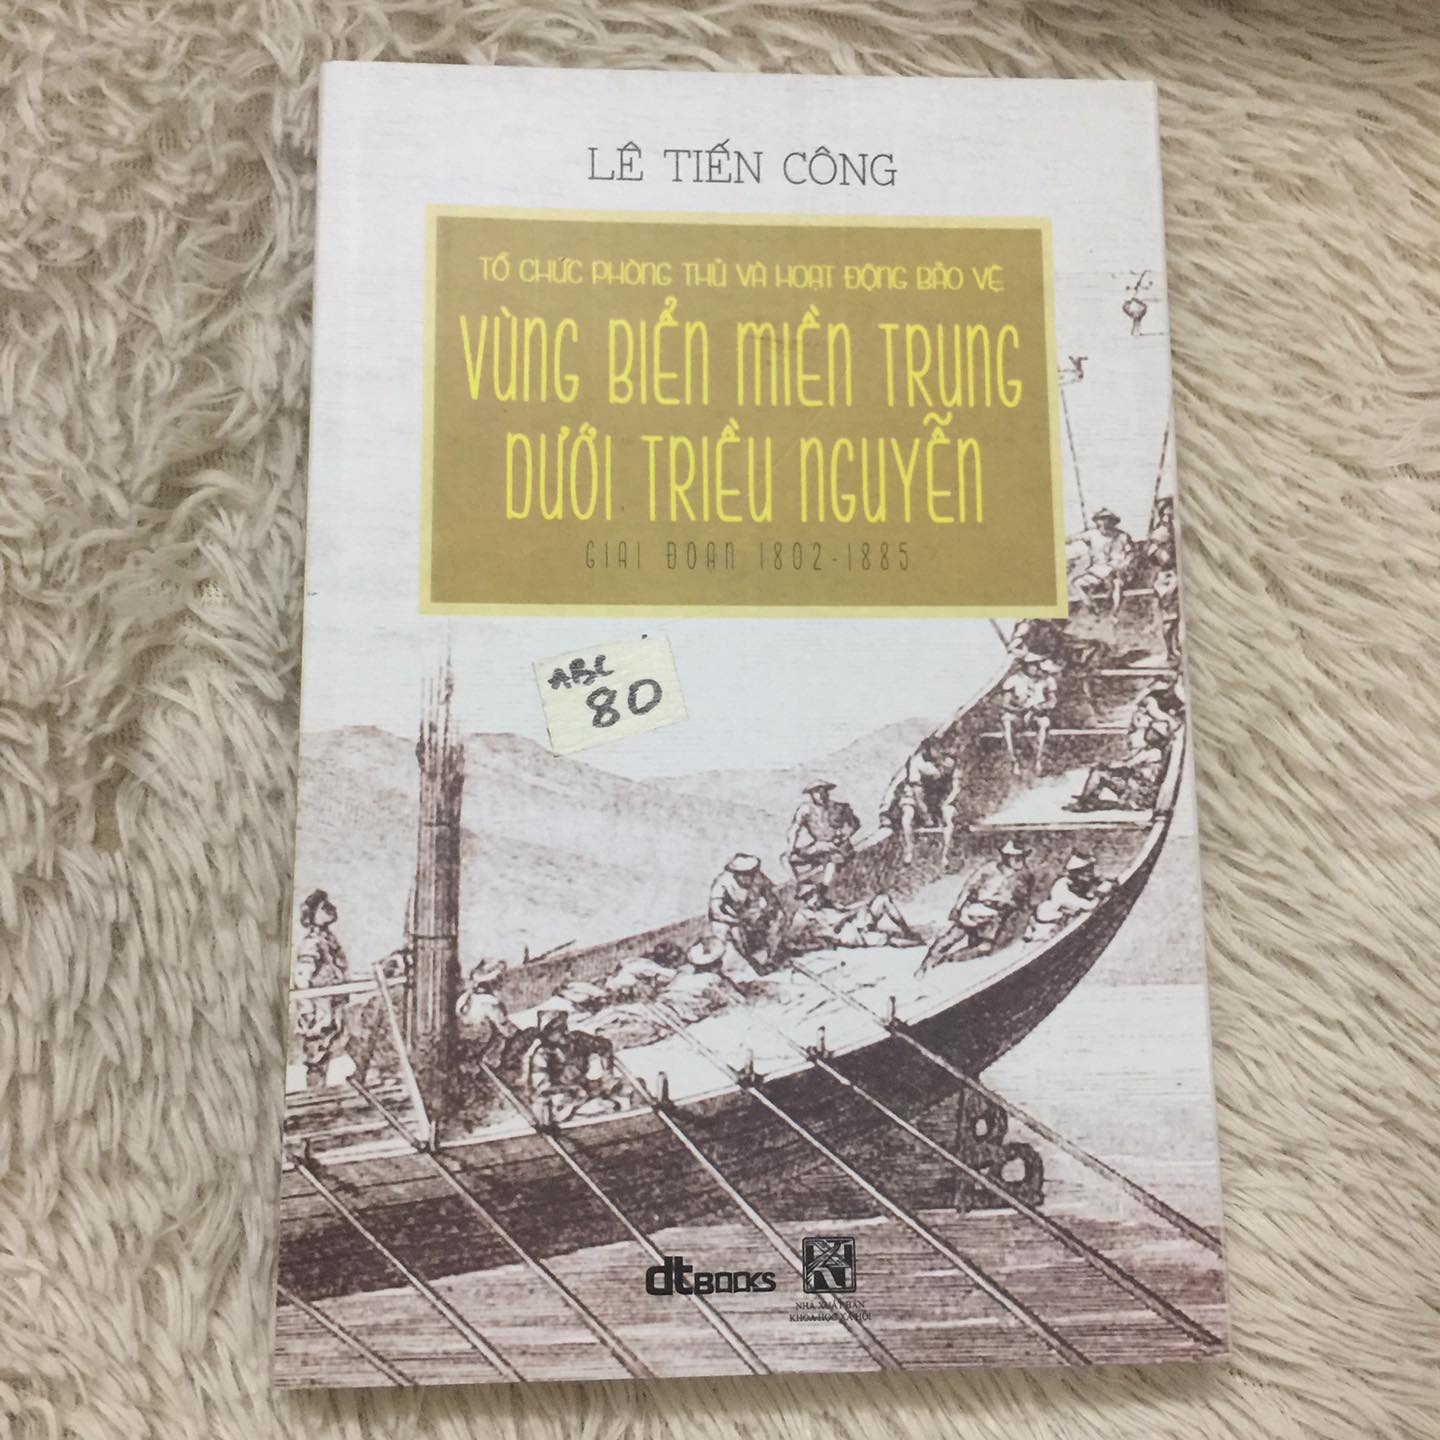 Vùng Biển Miền Trung Dưới Triều Nguyễn Giai Đoạn 1802 - 1885